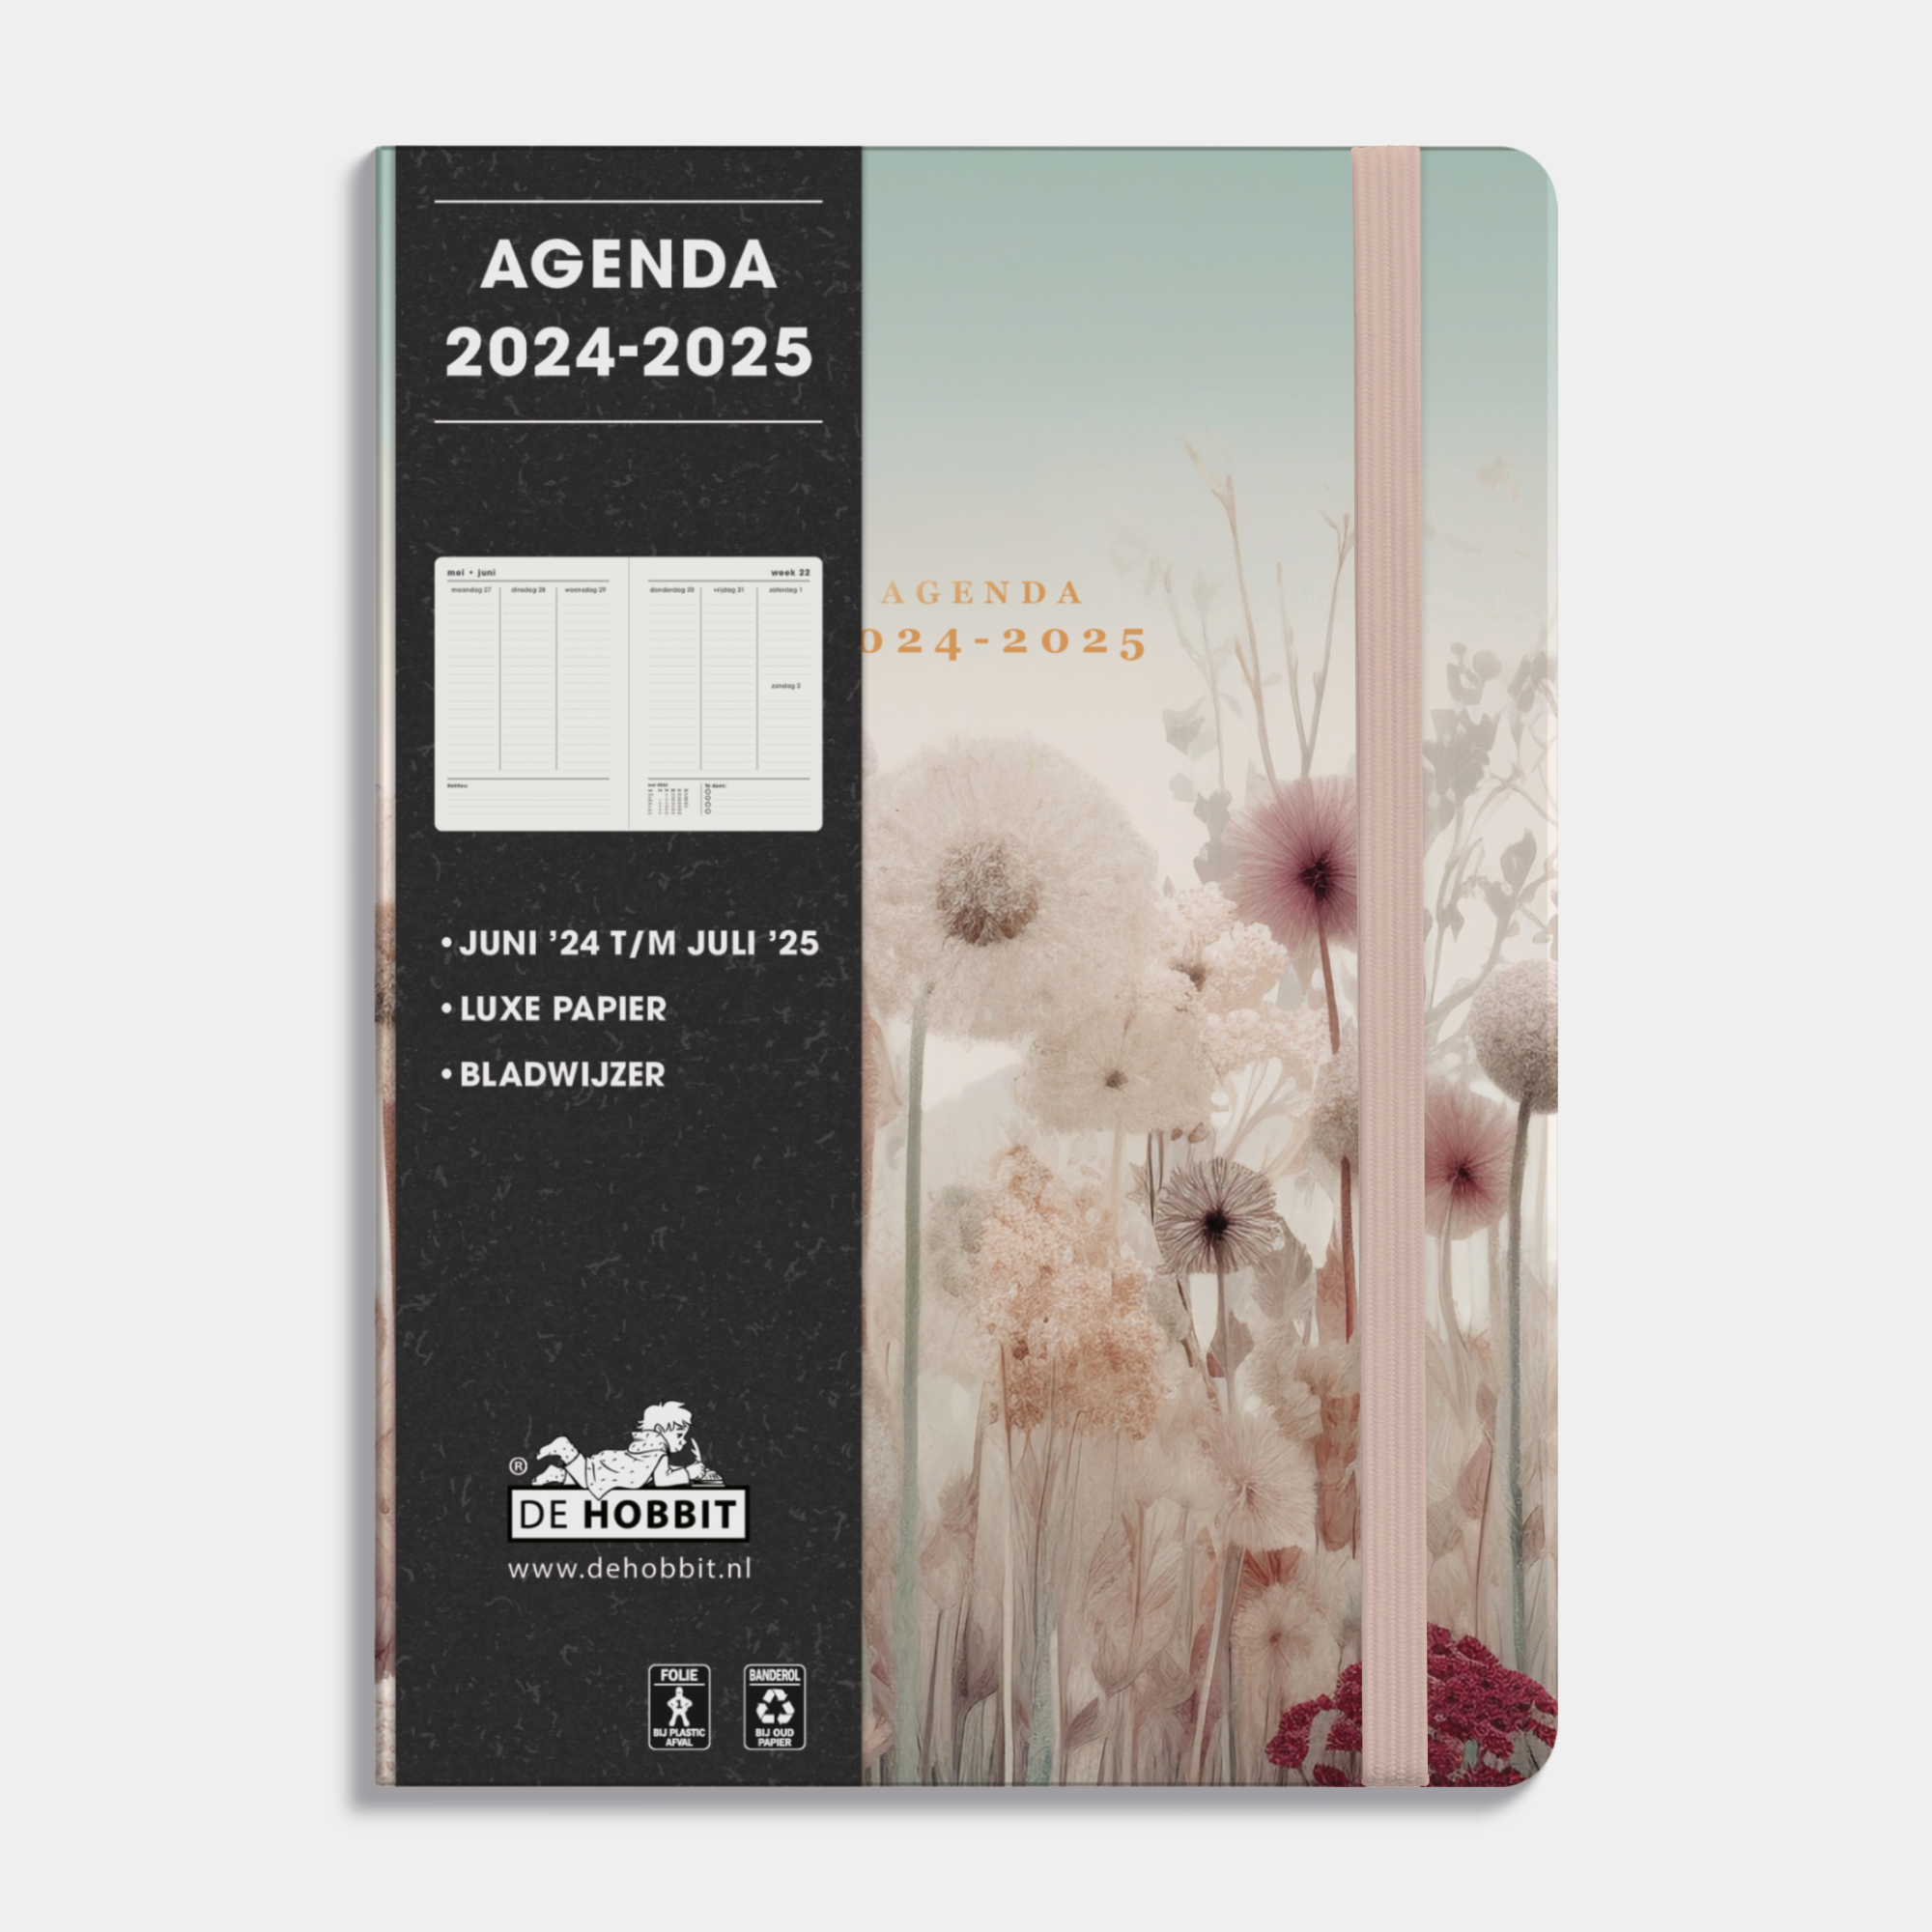 AGENDA 2024-2025 A5 VELDBLOEMEN